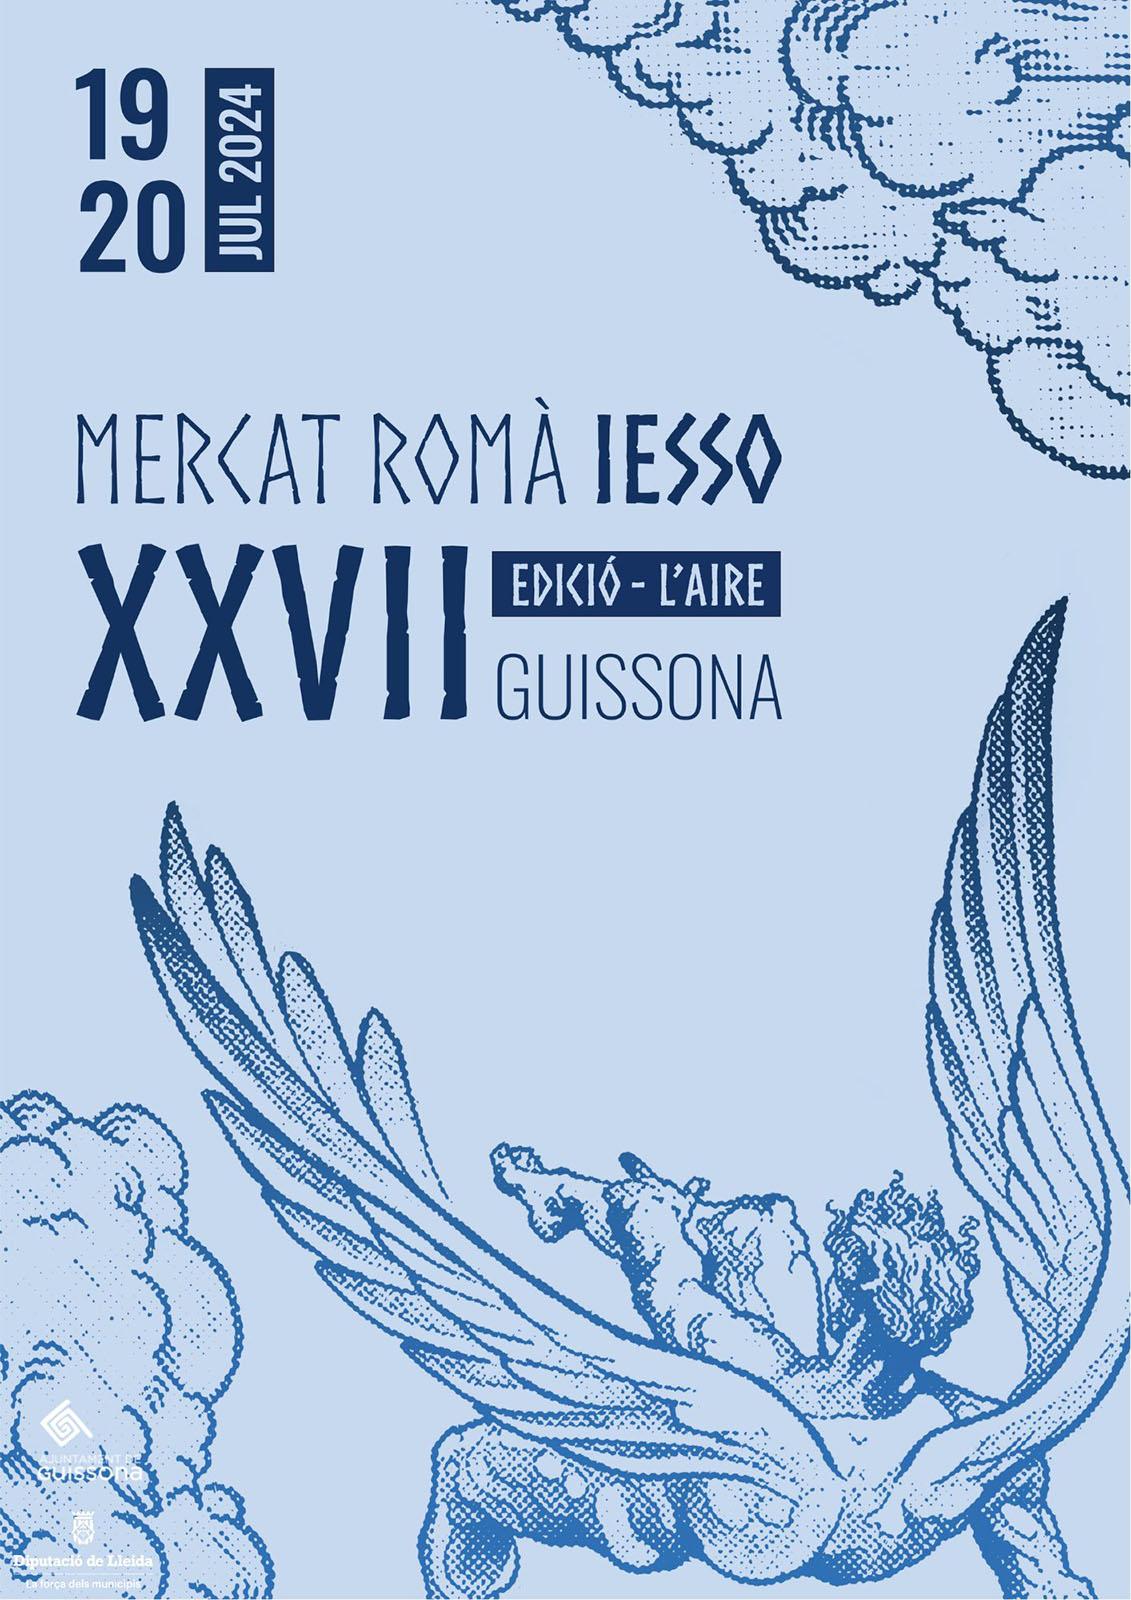 cartell XXVII Mercat Romà de Iesso